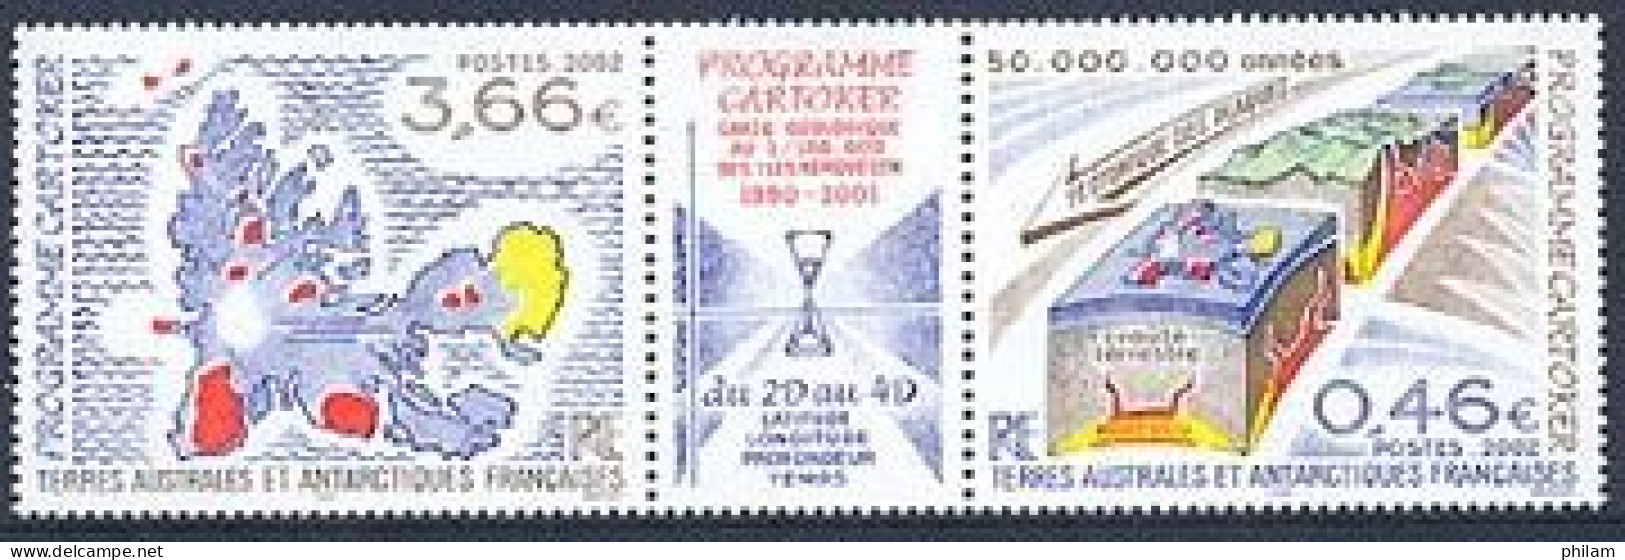 TAAF 2002 - Programe Cartoker - Géologie - Neufs